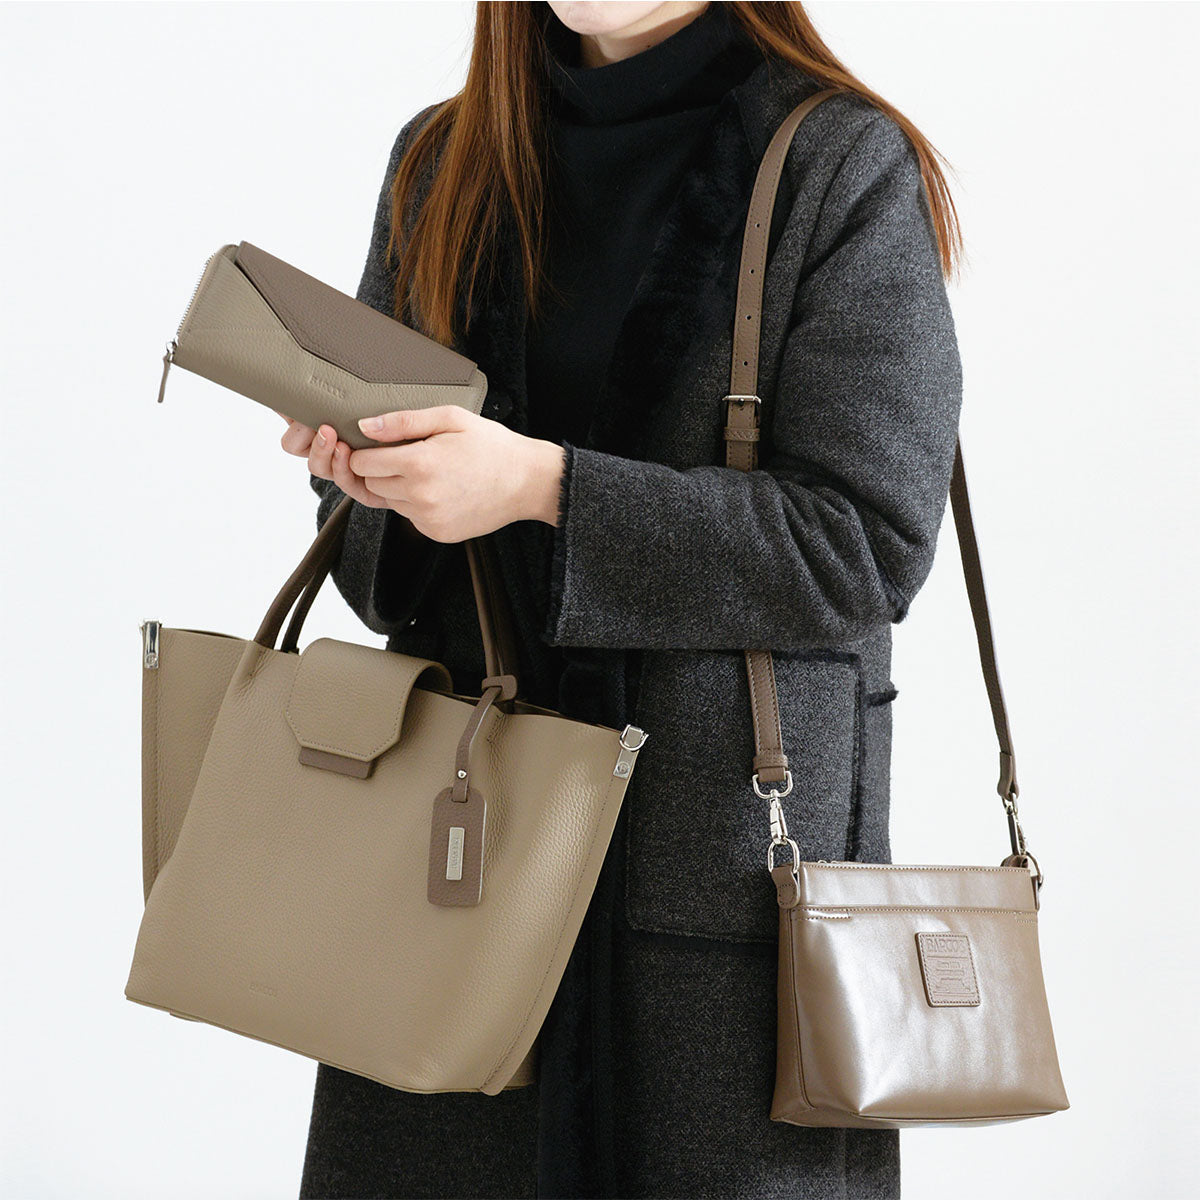 Charlotte Shrink Leather Handbag